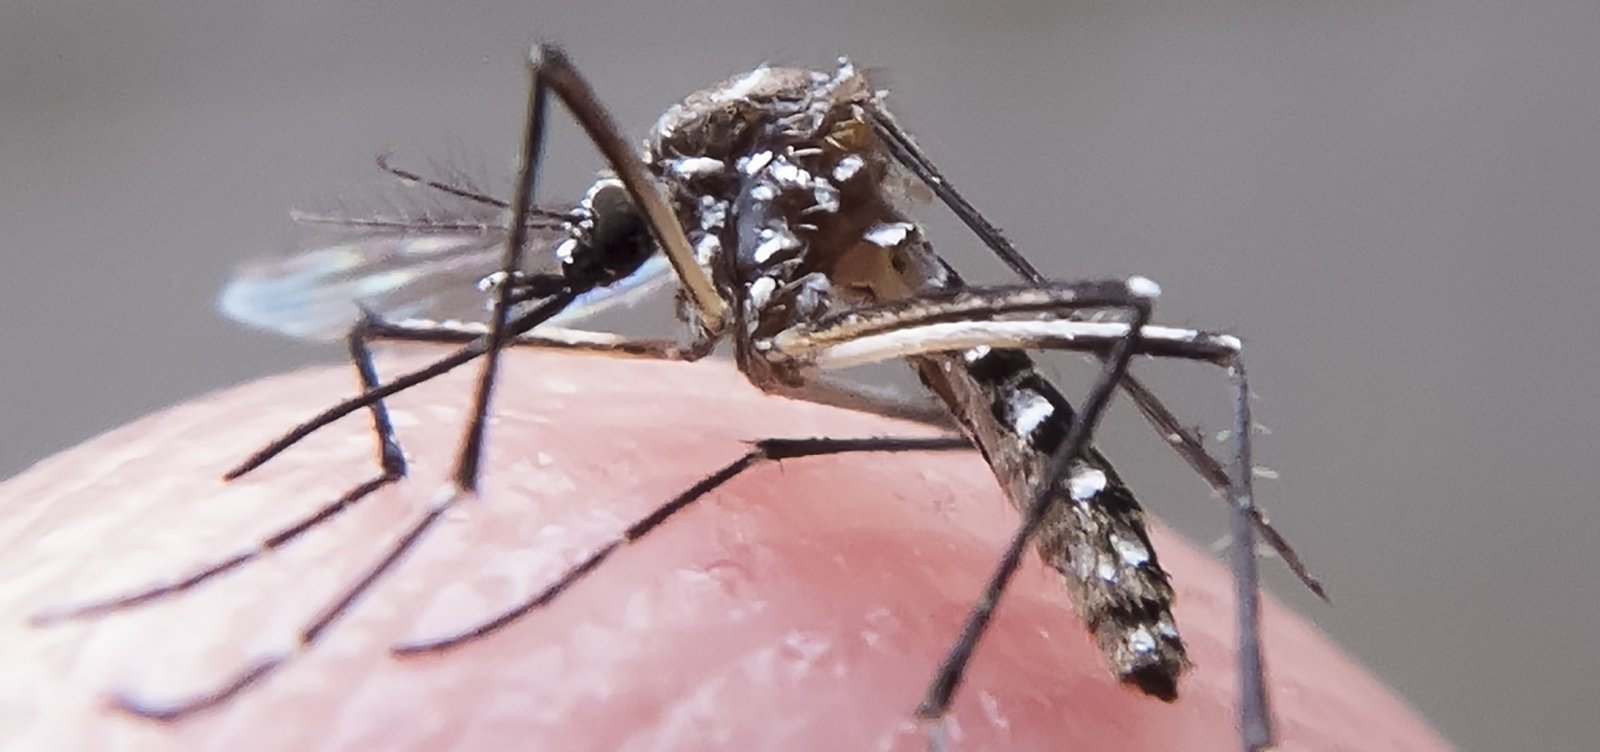 Com quase 800 casos confirmados, Itabuna vive epidemia de dengue